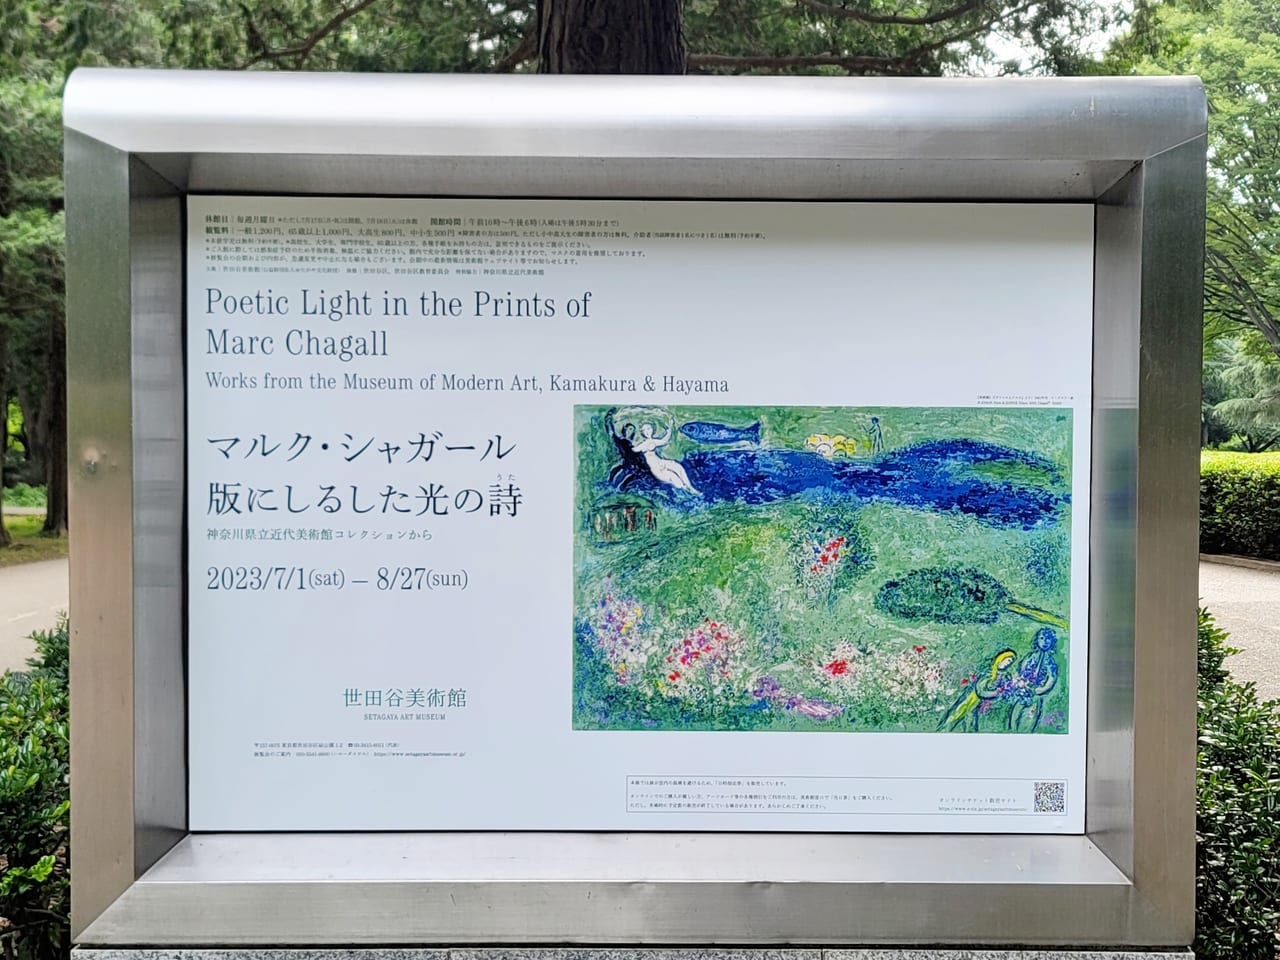 世田谷区】世田谷美術館にて「マルク・シャガール 版にしるした光の詩(うた)  神奈川県立近代美術館コレクションから」が、7月1日(土)～8月27日(日)の期間開催されます。技法ごとに全く違う表現を楽しんで♪ 号外NET  世田谷区